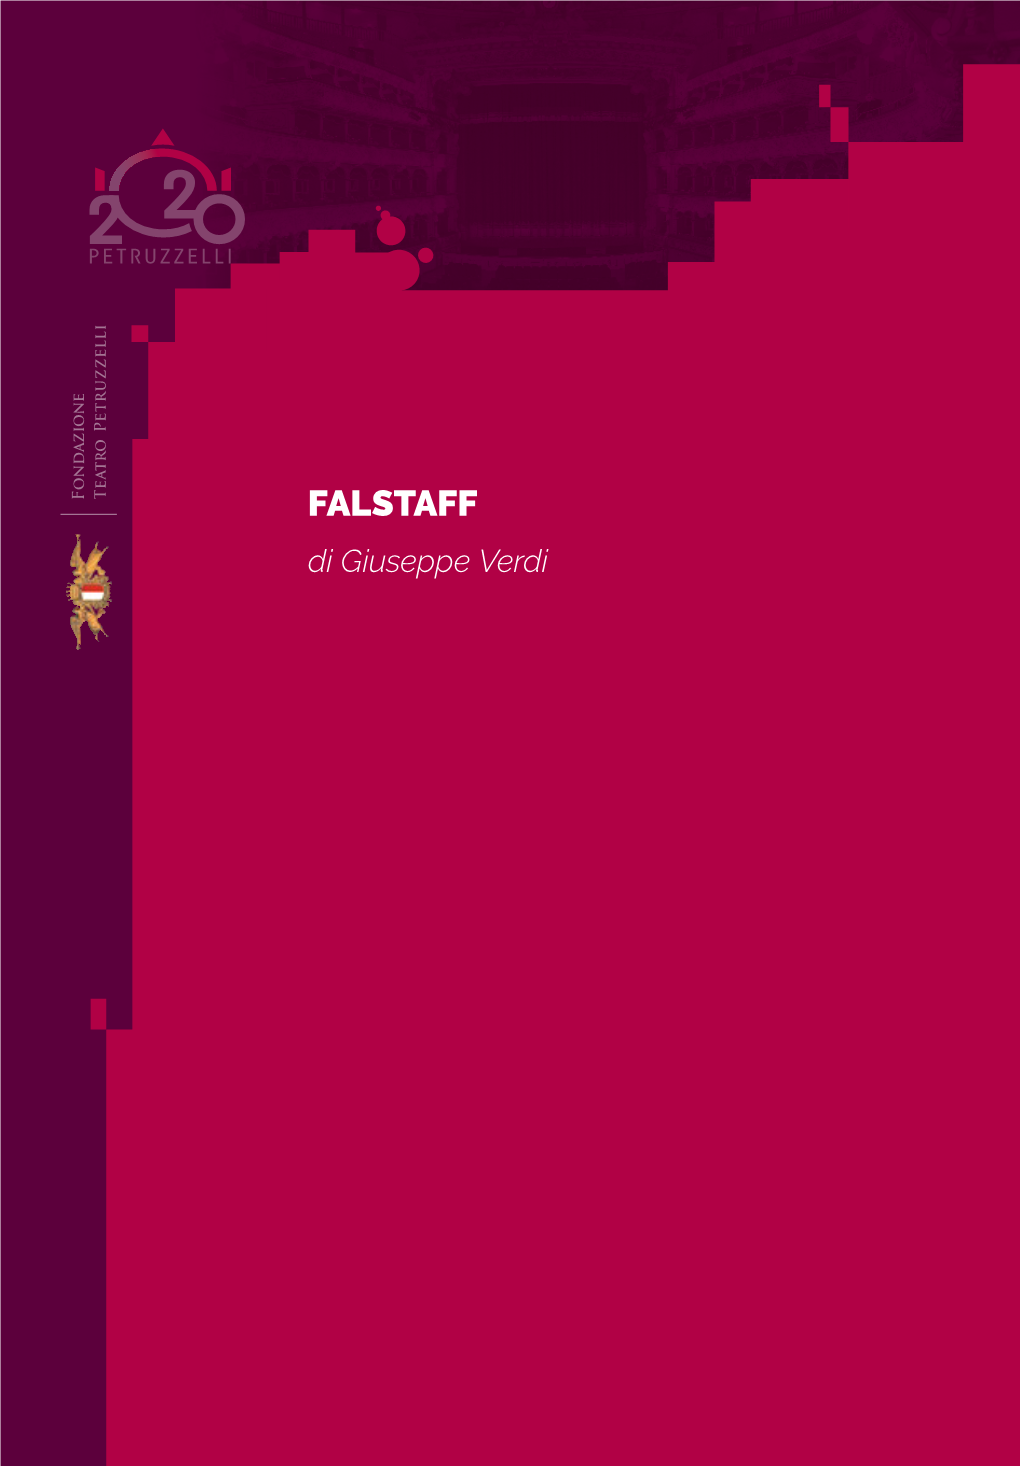 FALSTAFF Di Giuseppe Verdi FONDATORI PARTNERS CONSIGLIO DI INDIRIZZO